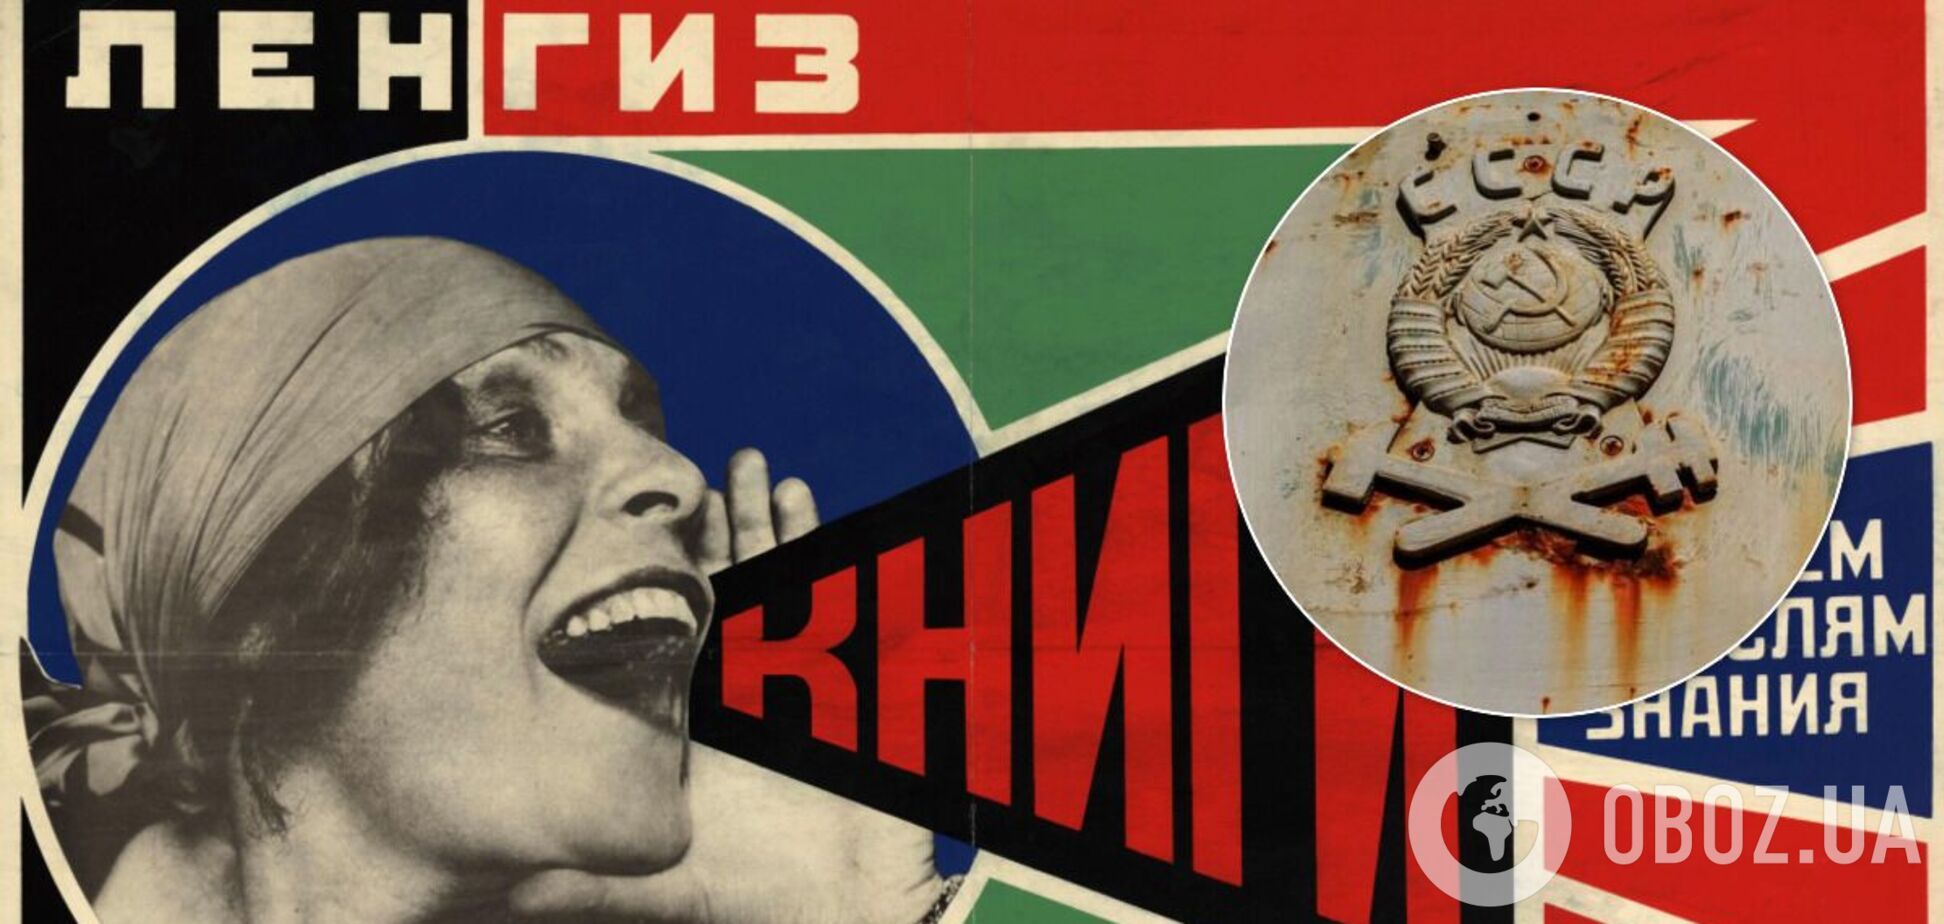 Маяковский рекламировал папиросы, а Боярский мебель: какой была реклама в СССР